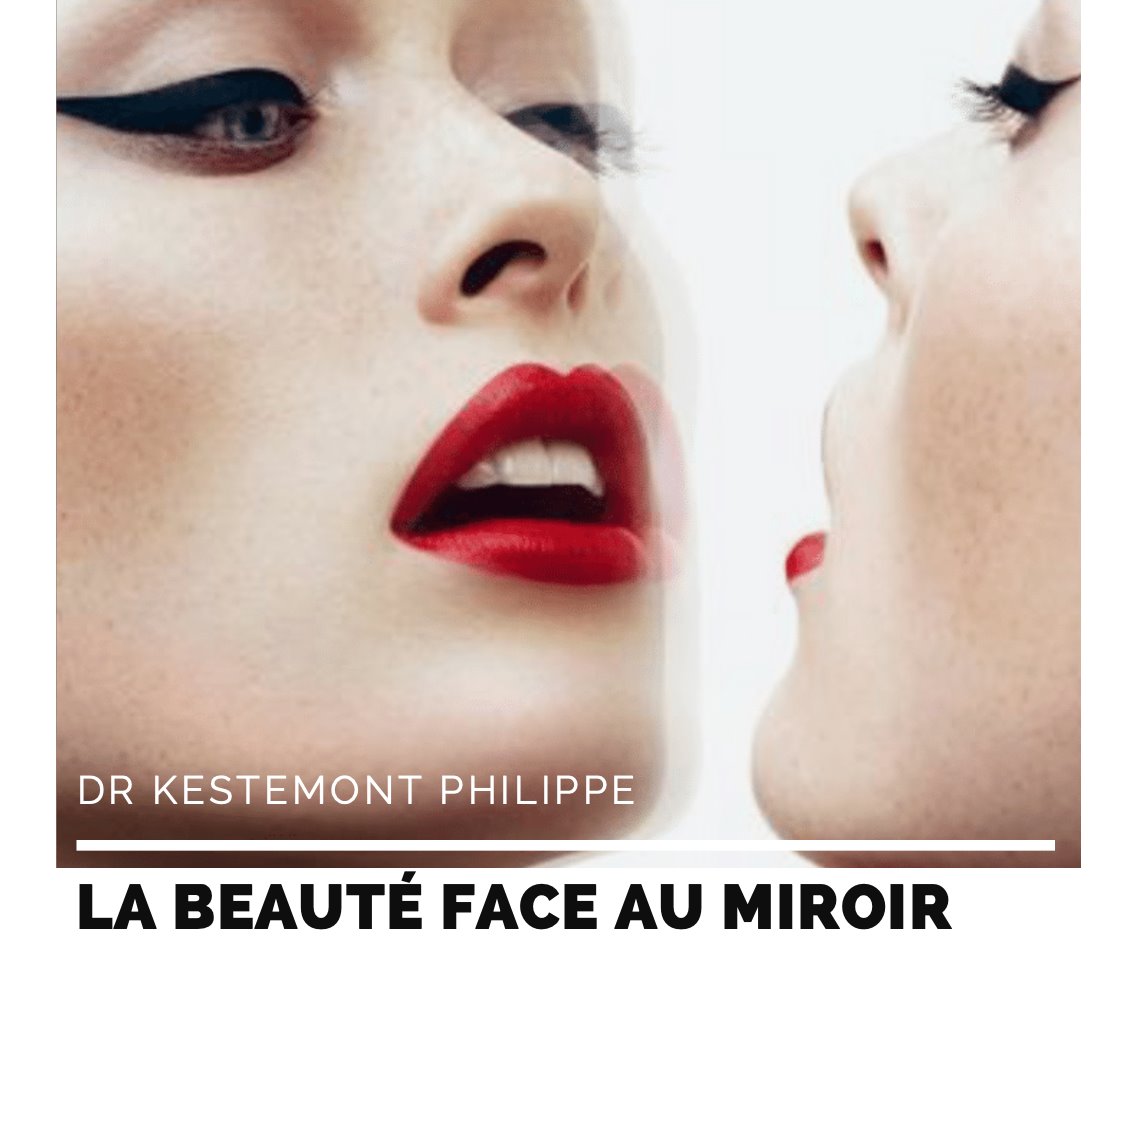 La beauté face au miroir